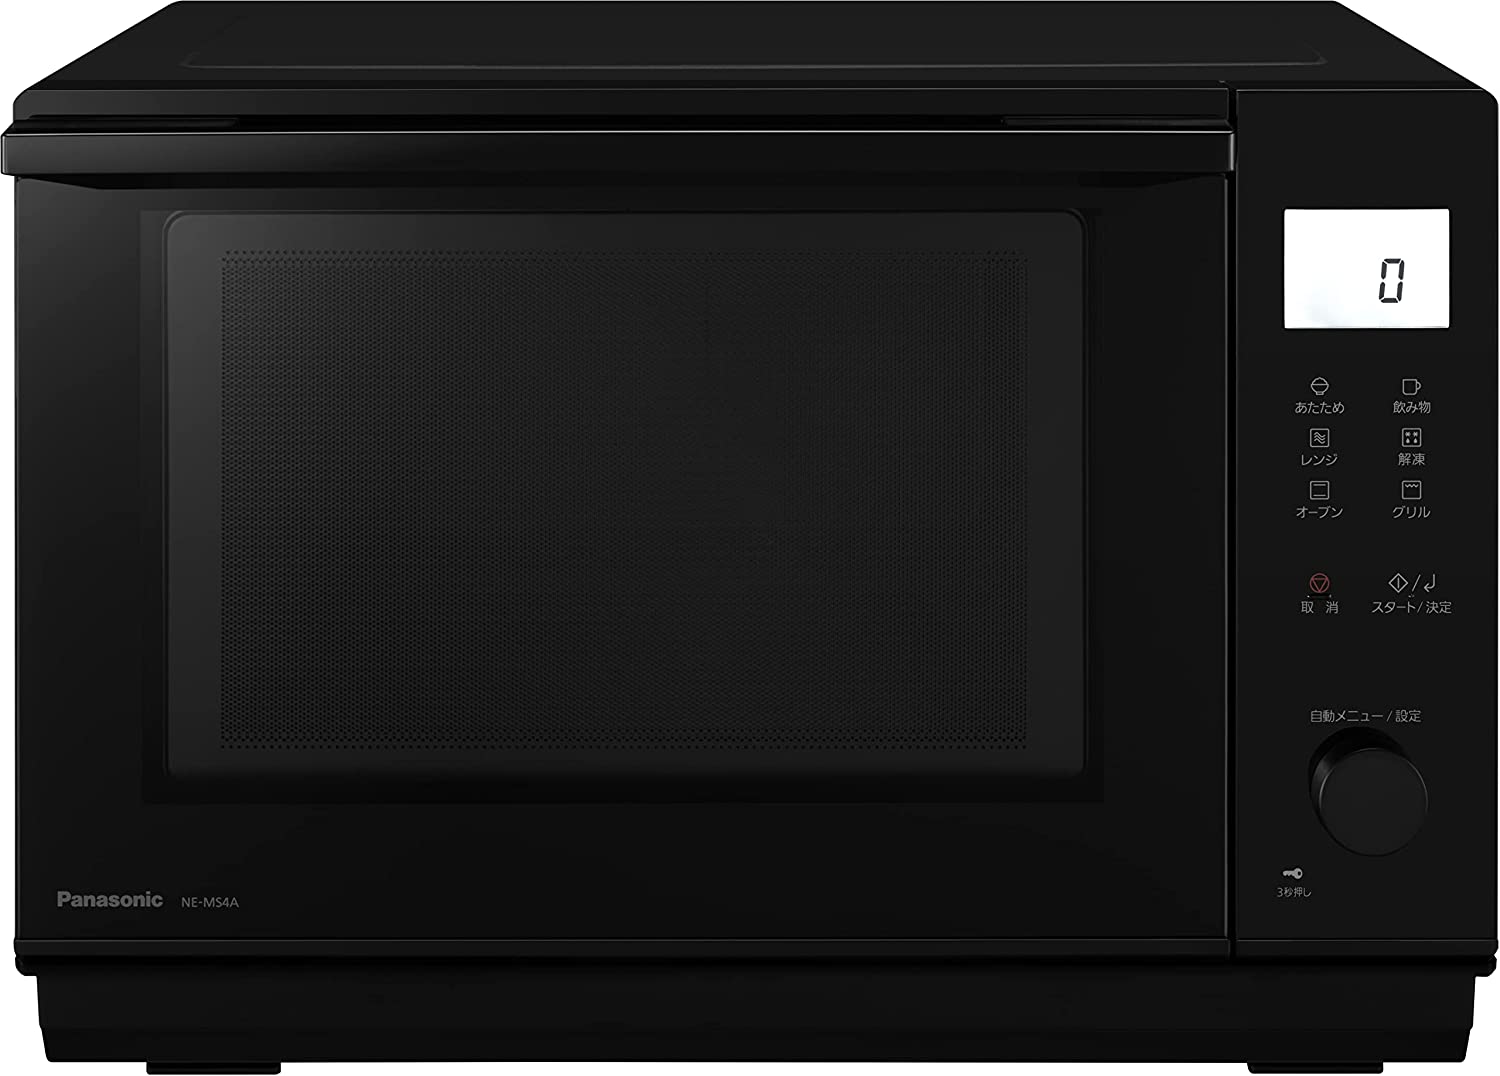 日本代購 空運 2022新款 Panasonic 國際牌 NE-MS4A 微波烤箱 26L 微波爐 烤箱 烘烤爐 黑色